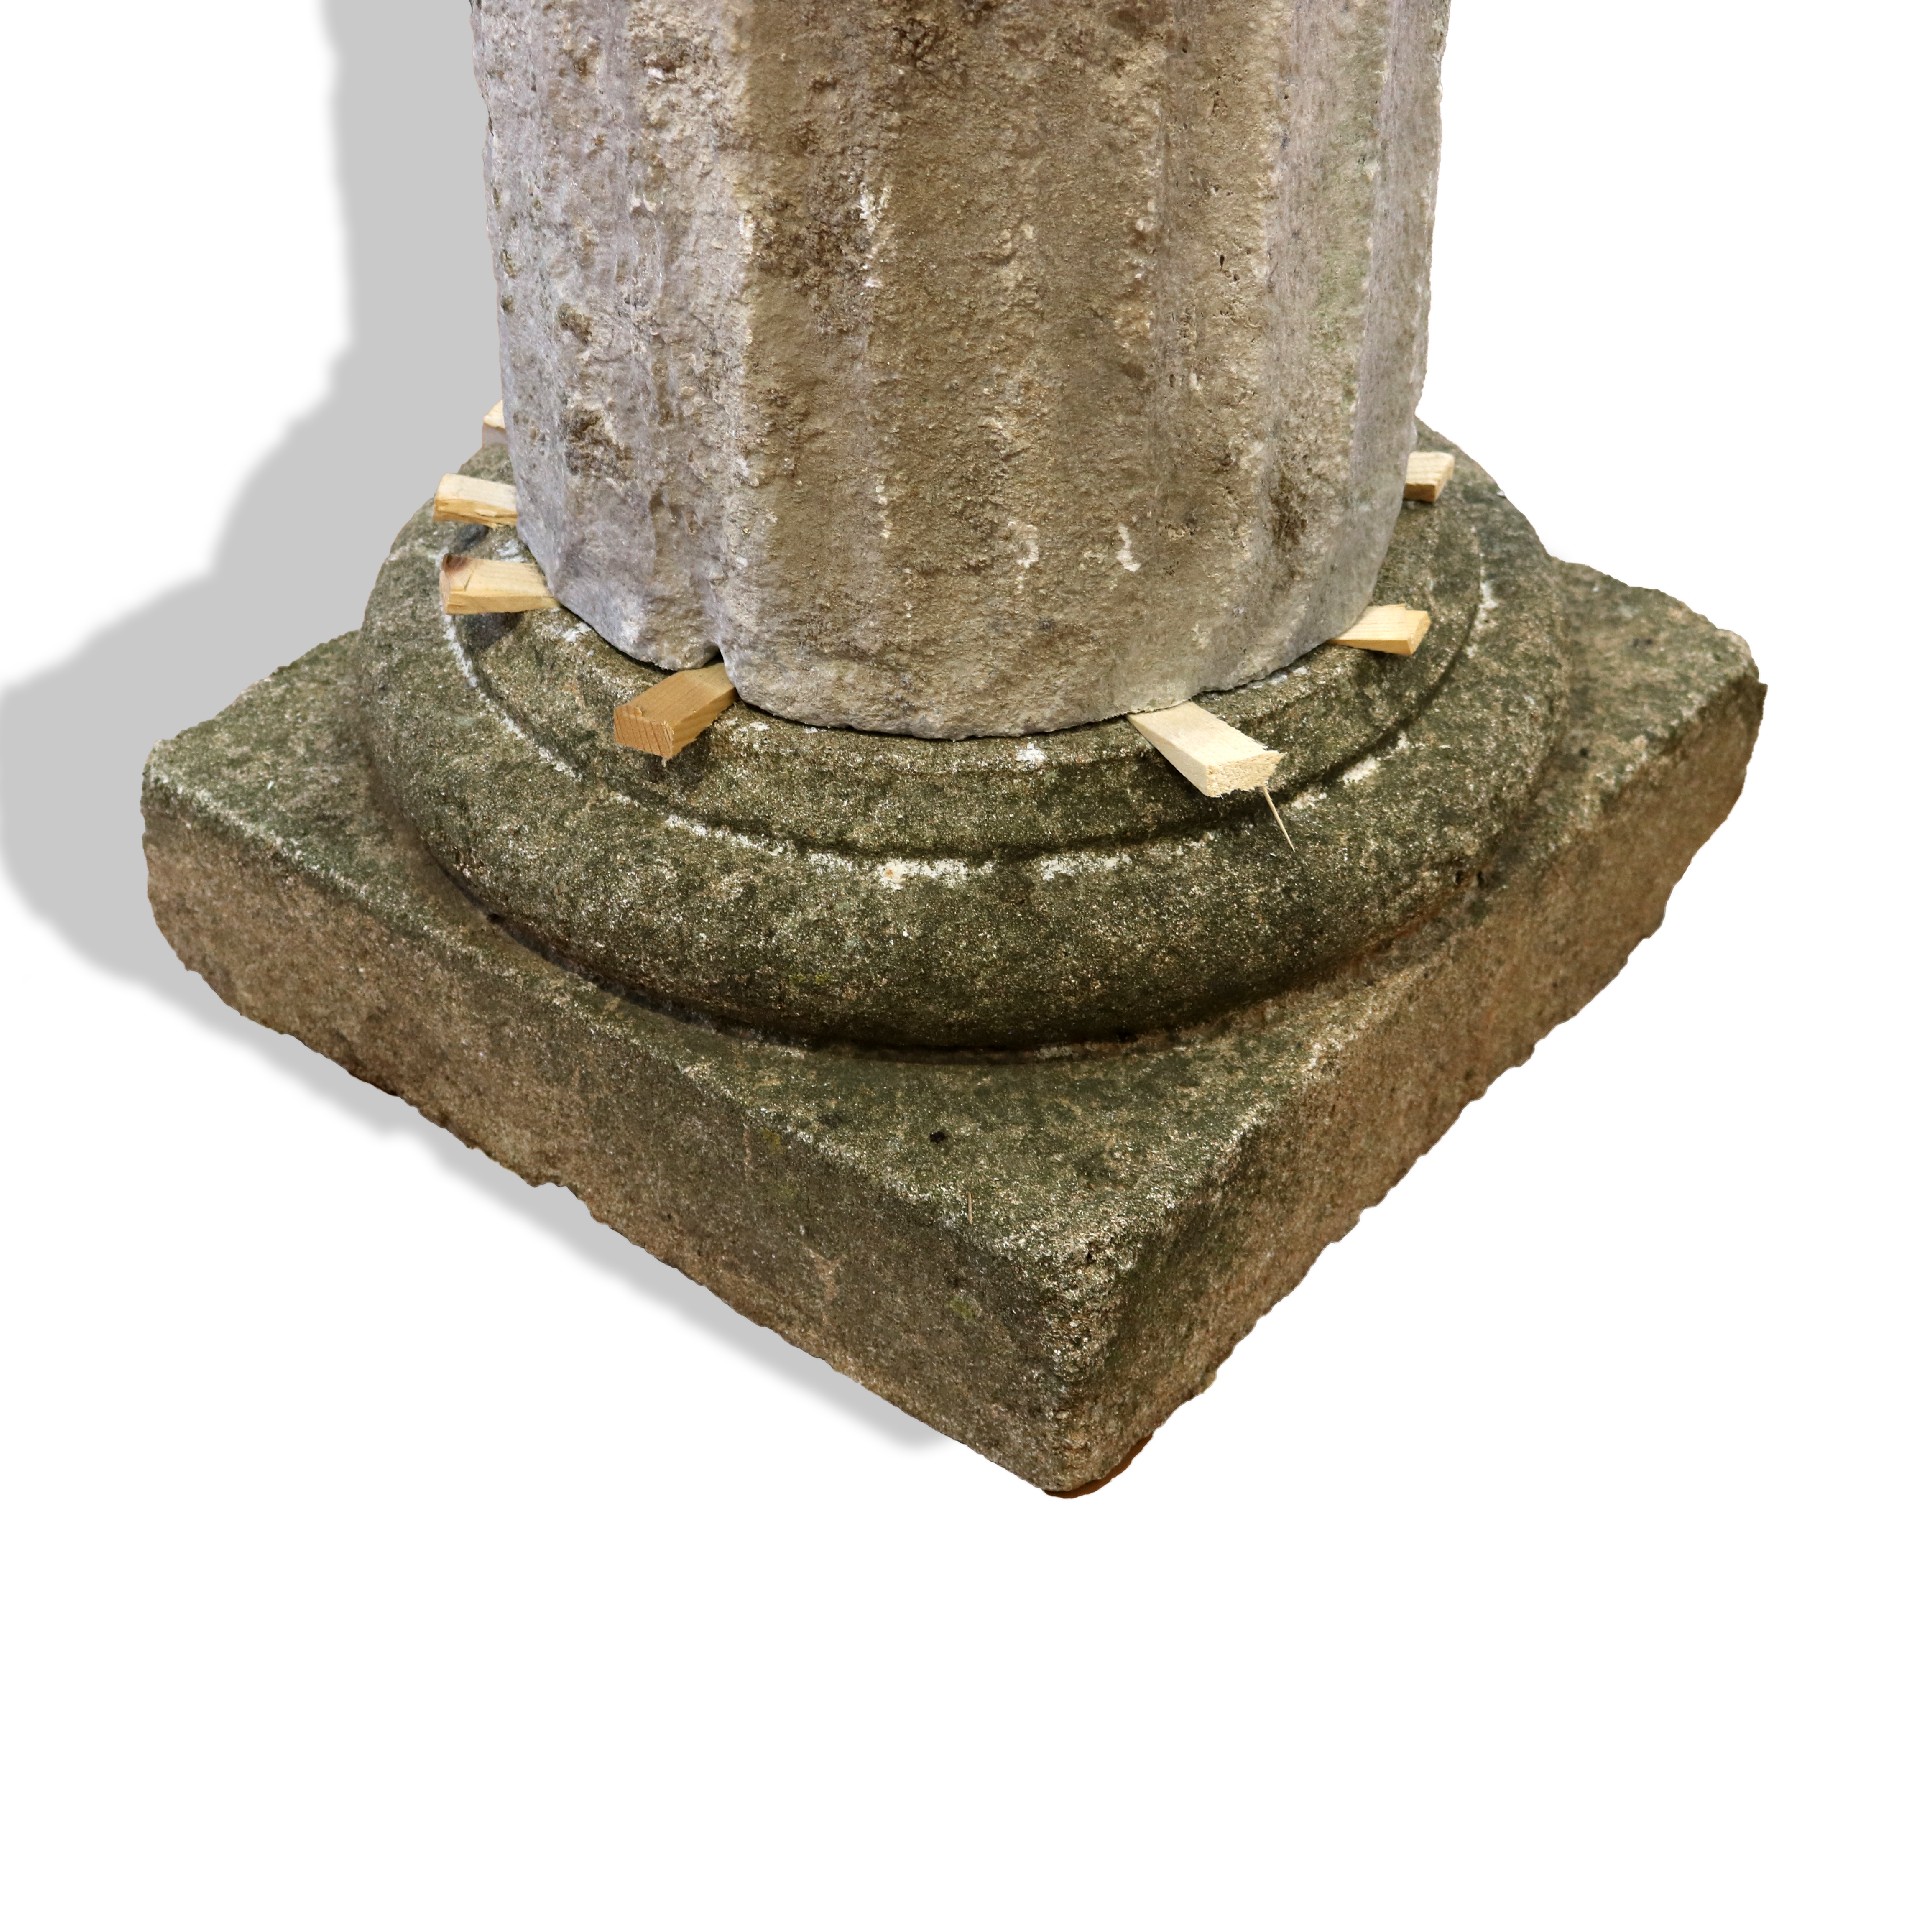 Antica colonna con capitello in alabastro. - 1